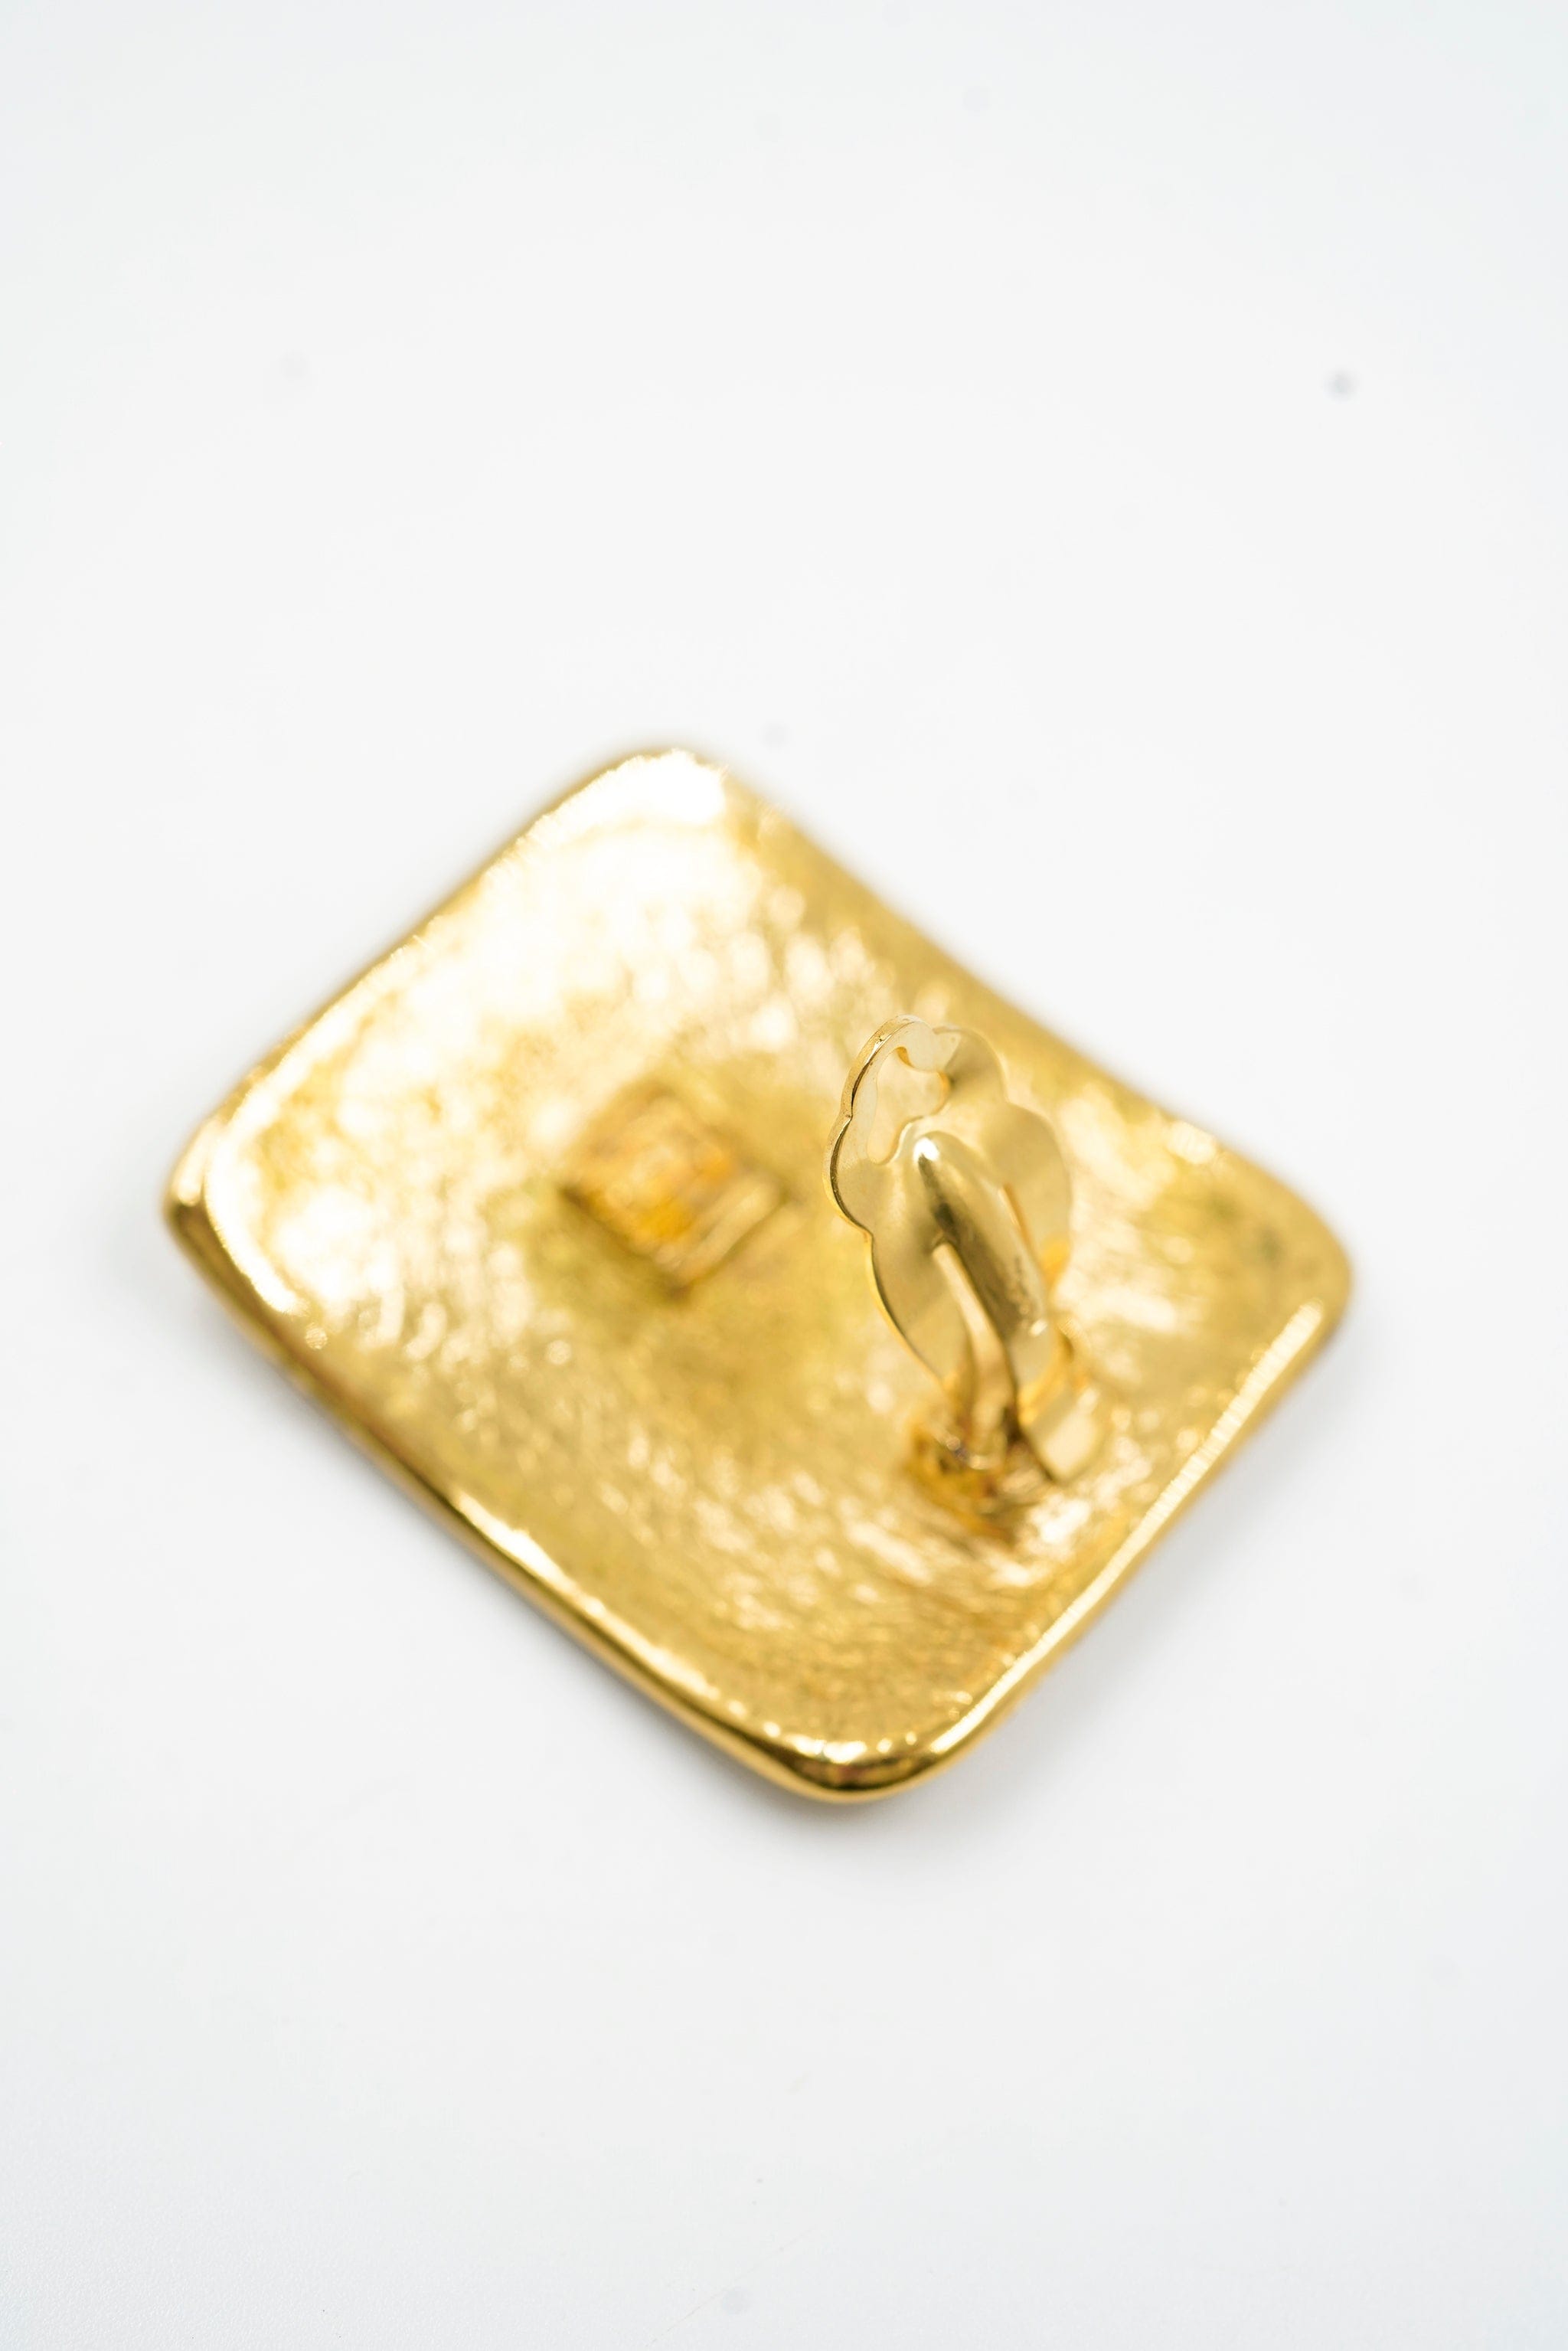 Yves Saint Laurent YSL rectangular logo earrings - AWL4199